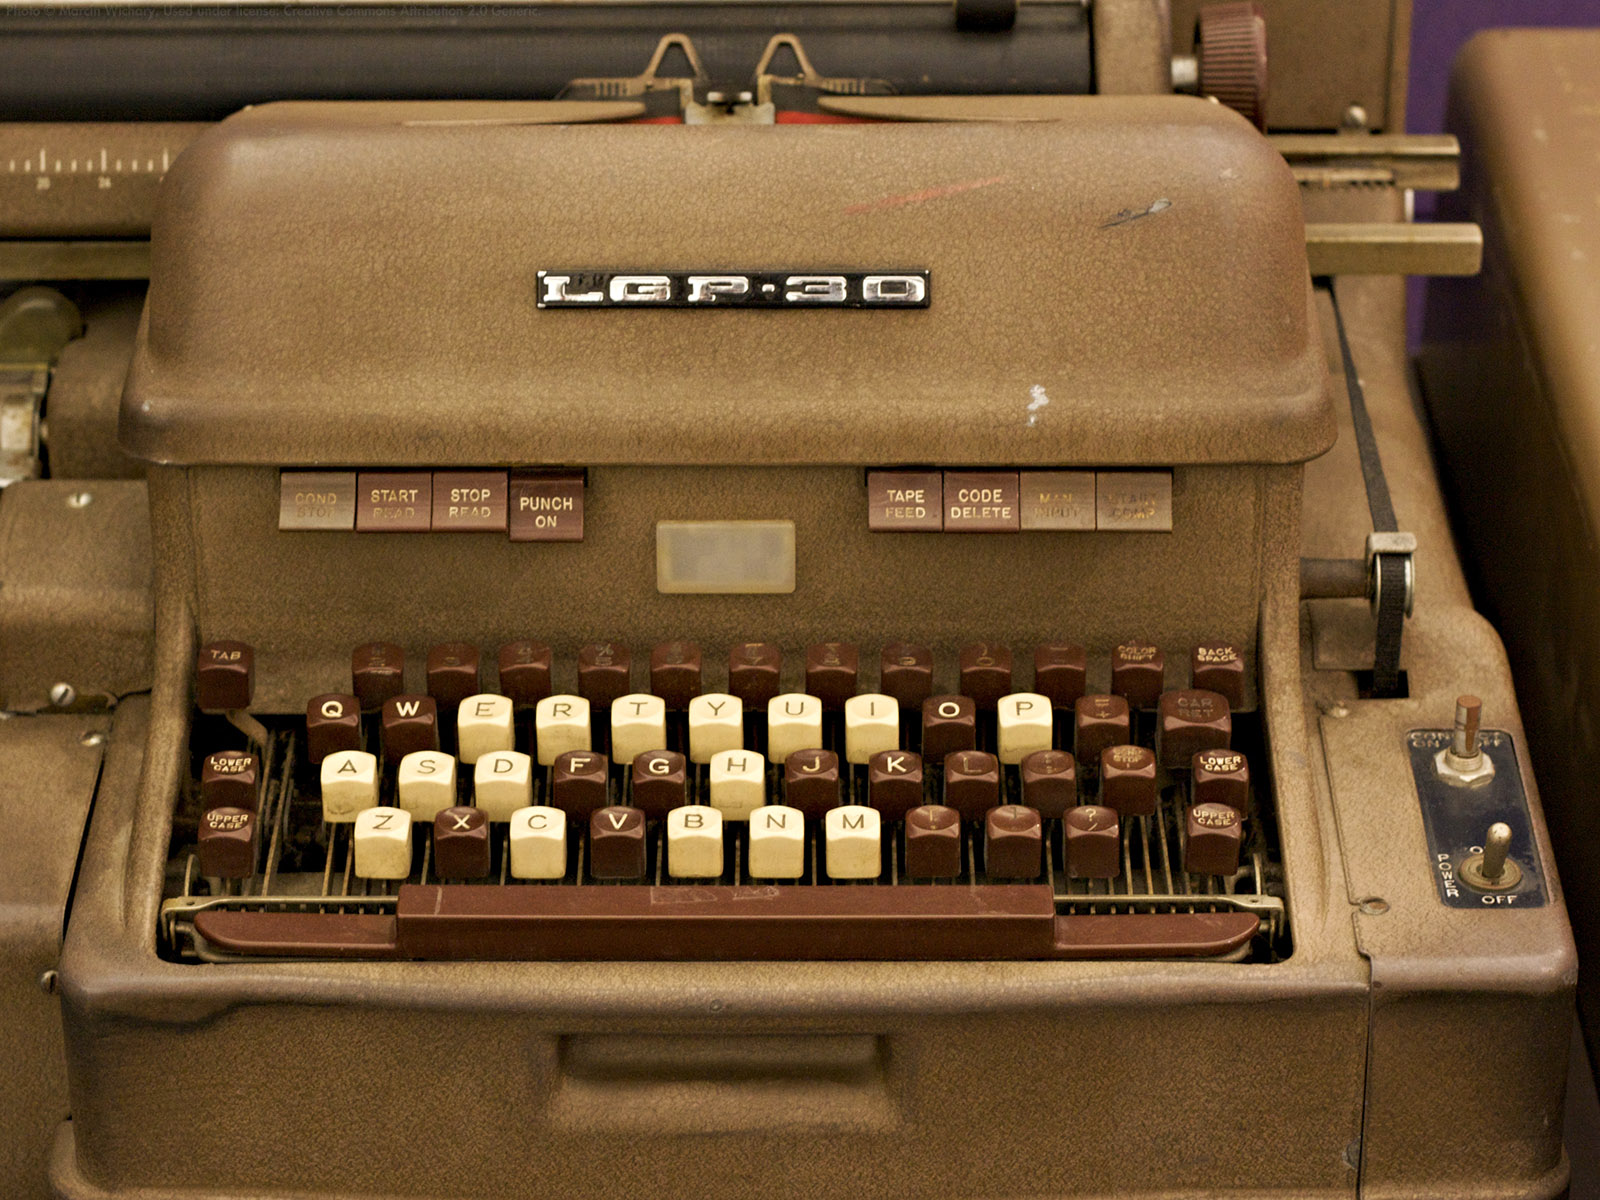 Free download wallpaper Typewriter, Man Made on your PC desktop